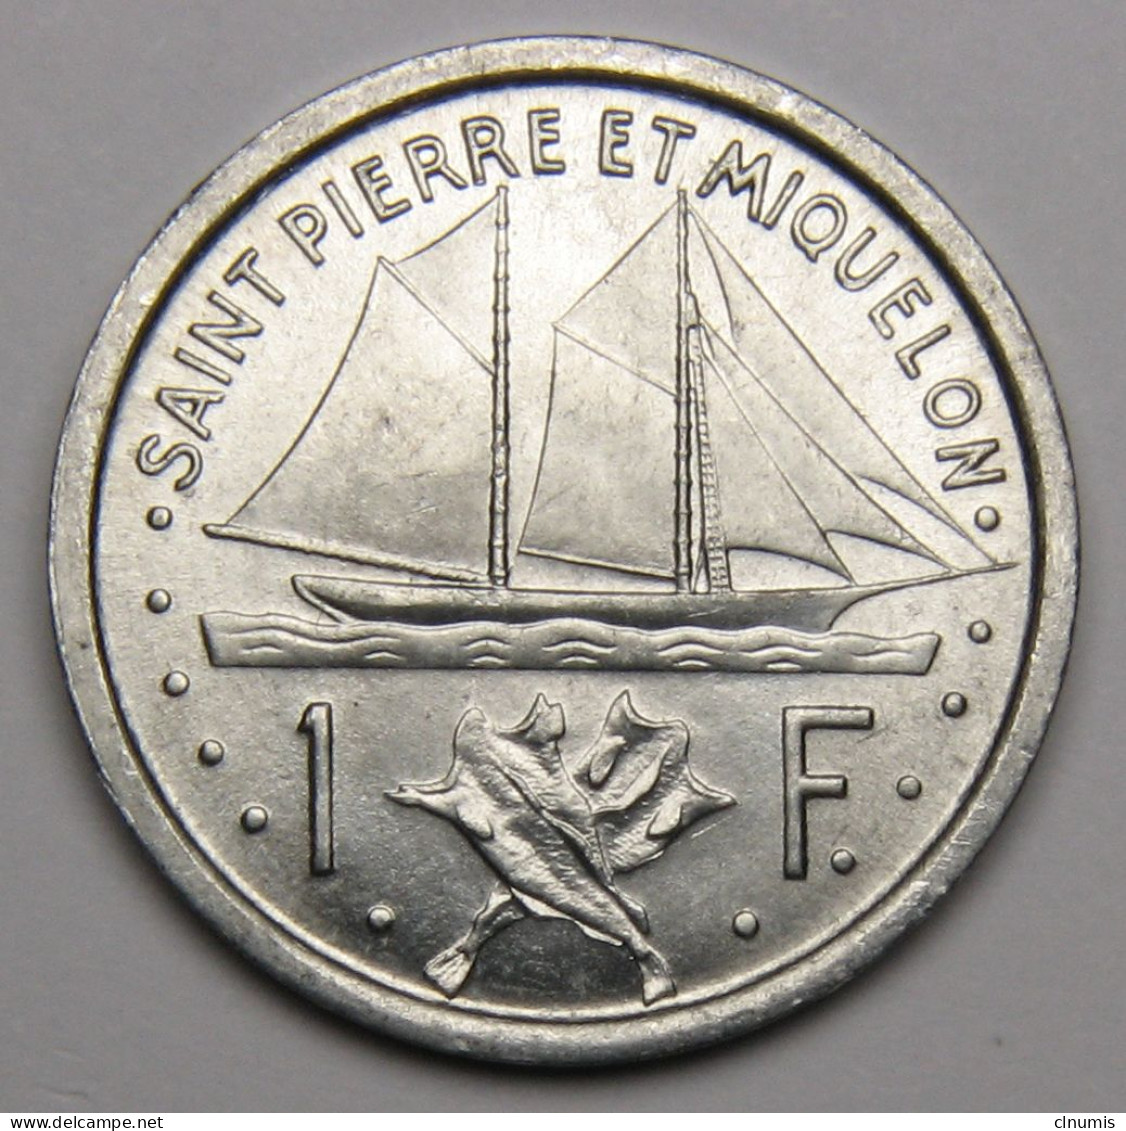 ASSEZ RARE : Saint-Pierre-et-Miquelon, 1 Franc Union Française, 1948 - Saint Pierre And Miquelon